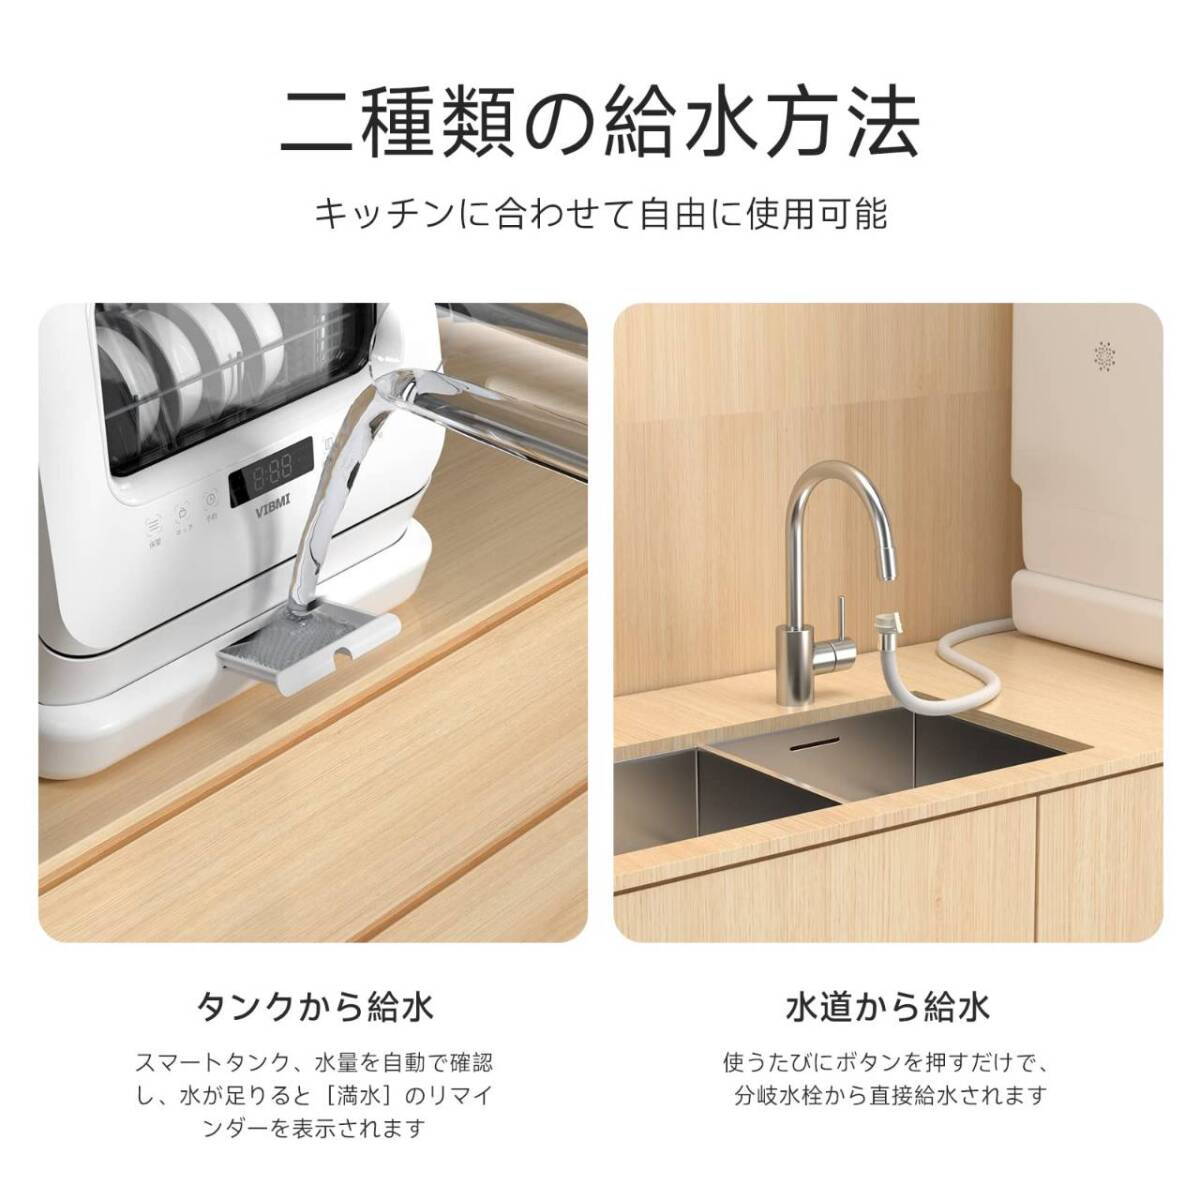 簡単設置の3-4人用食器洗い乾燥機